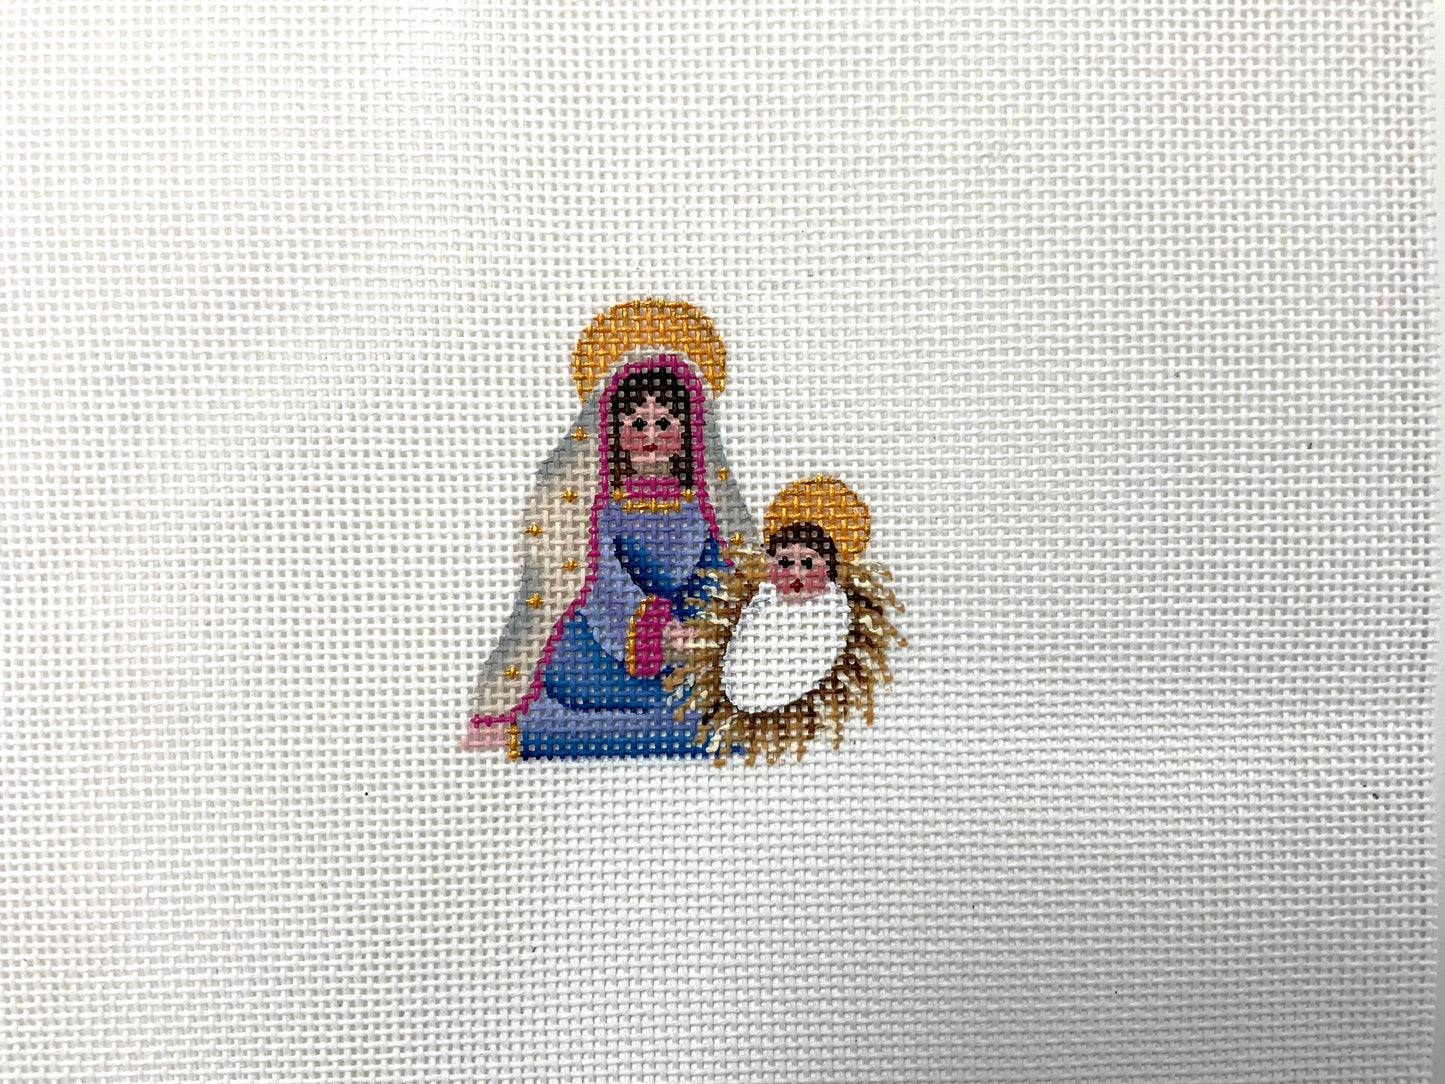 Mini Nativity Mary and Jesus